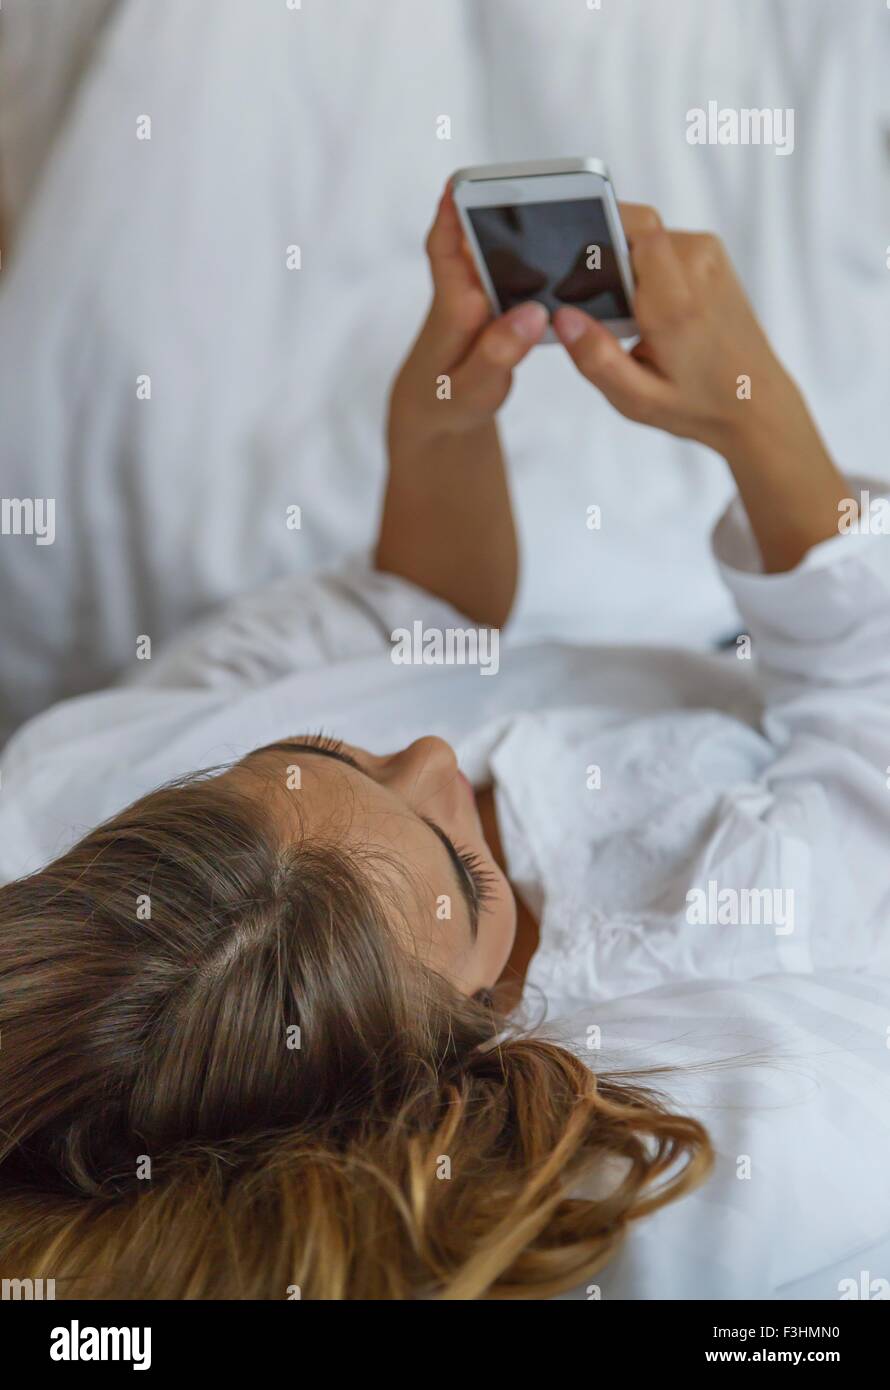 Hohen Winkel über Schulter Blick der jungen Frau mit smartphone Stockfoto